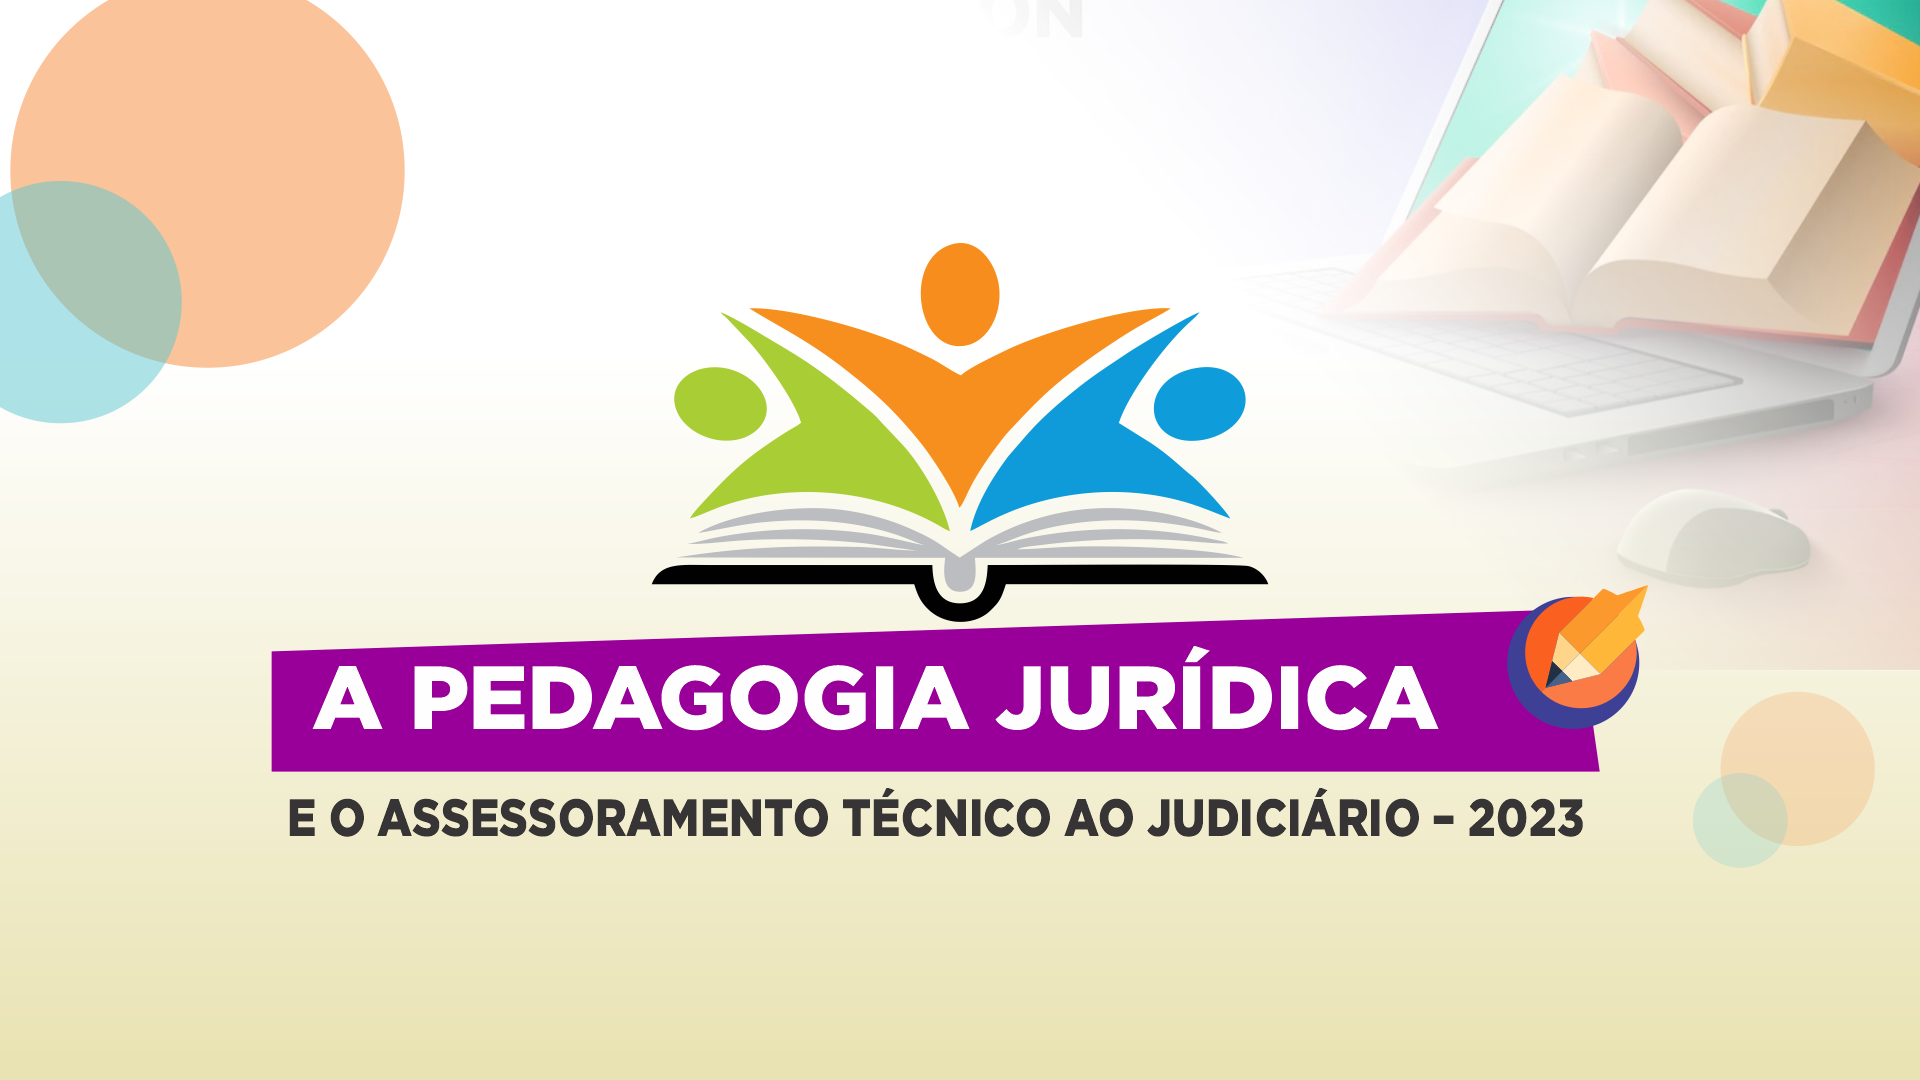 A Pedagogia Jurídica e o Assessoramento Técnico ao Judiciário – 2023